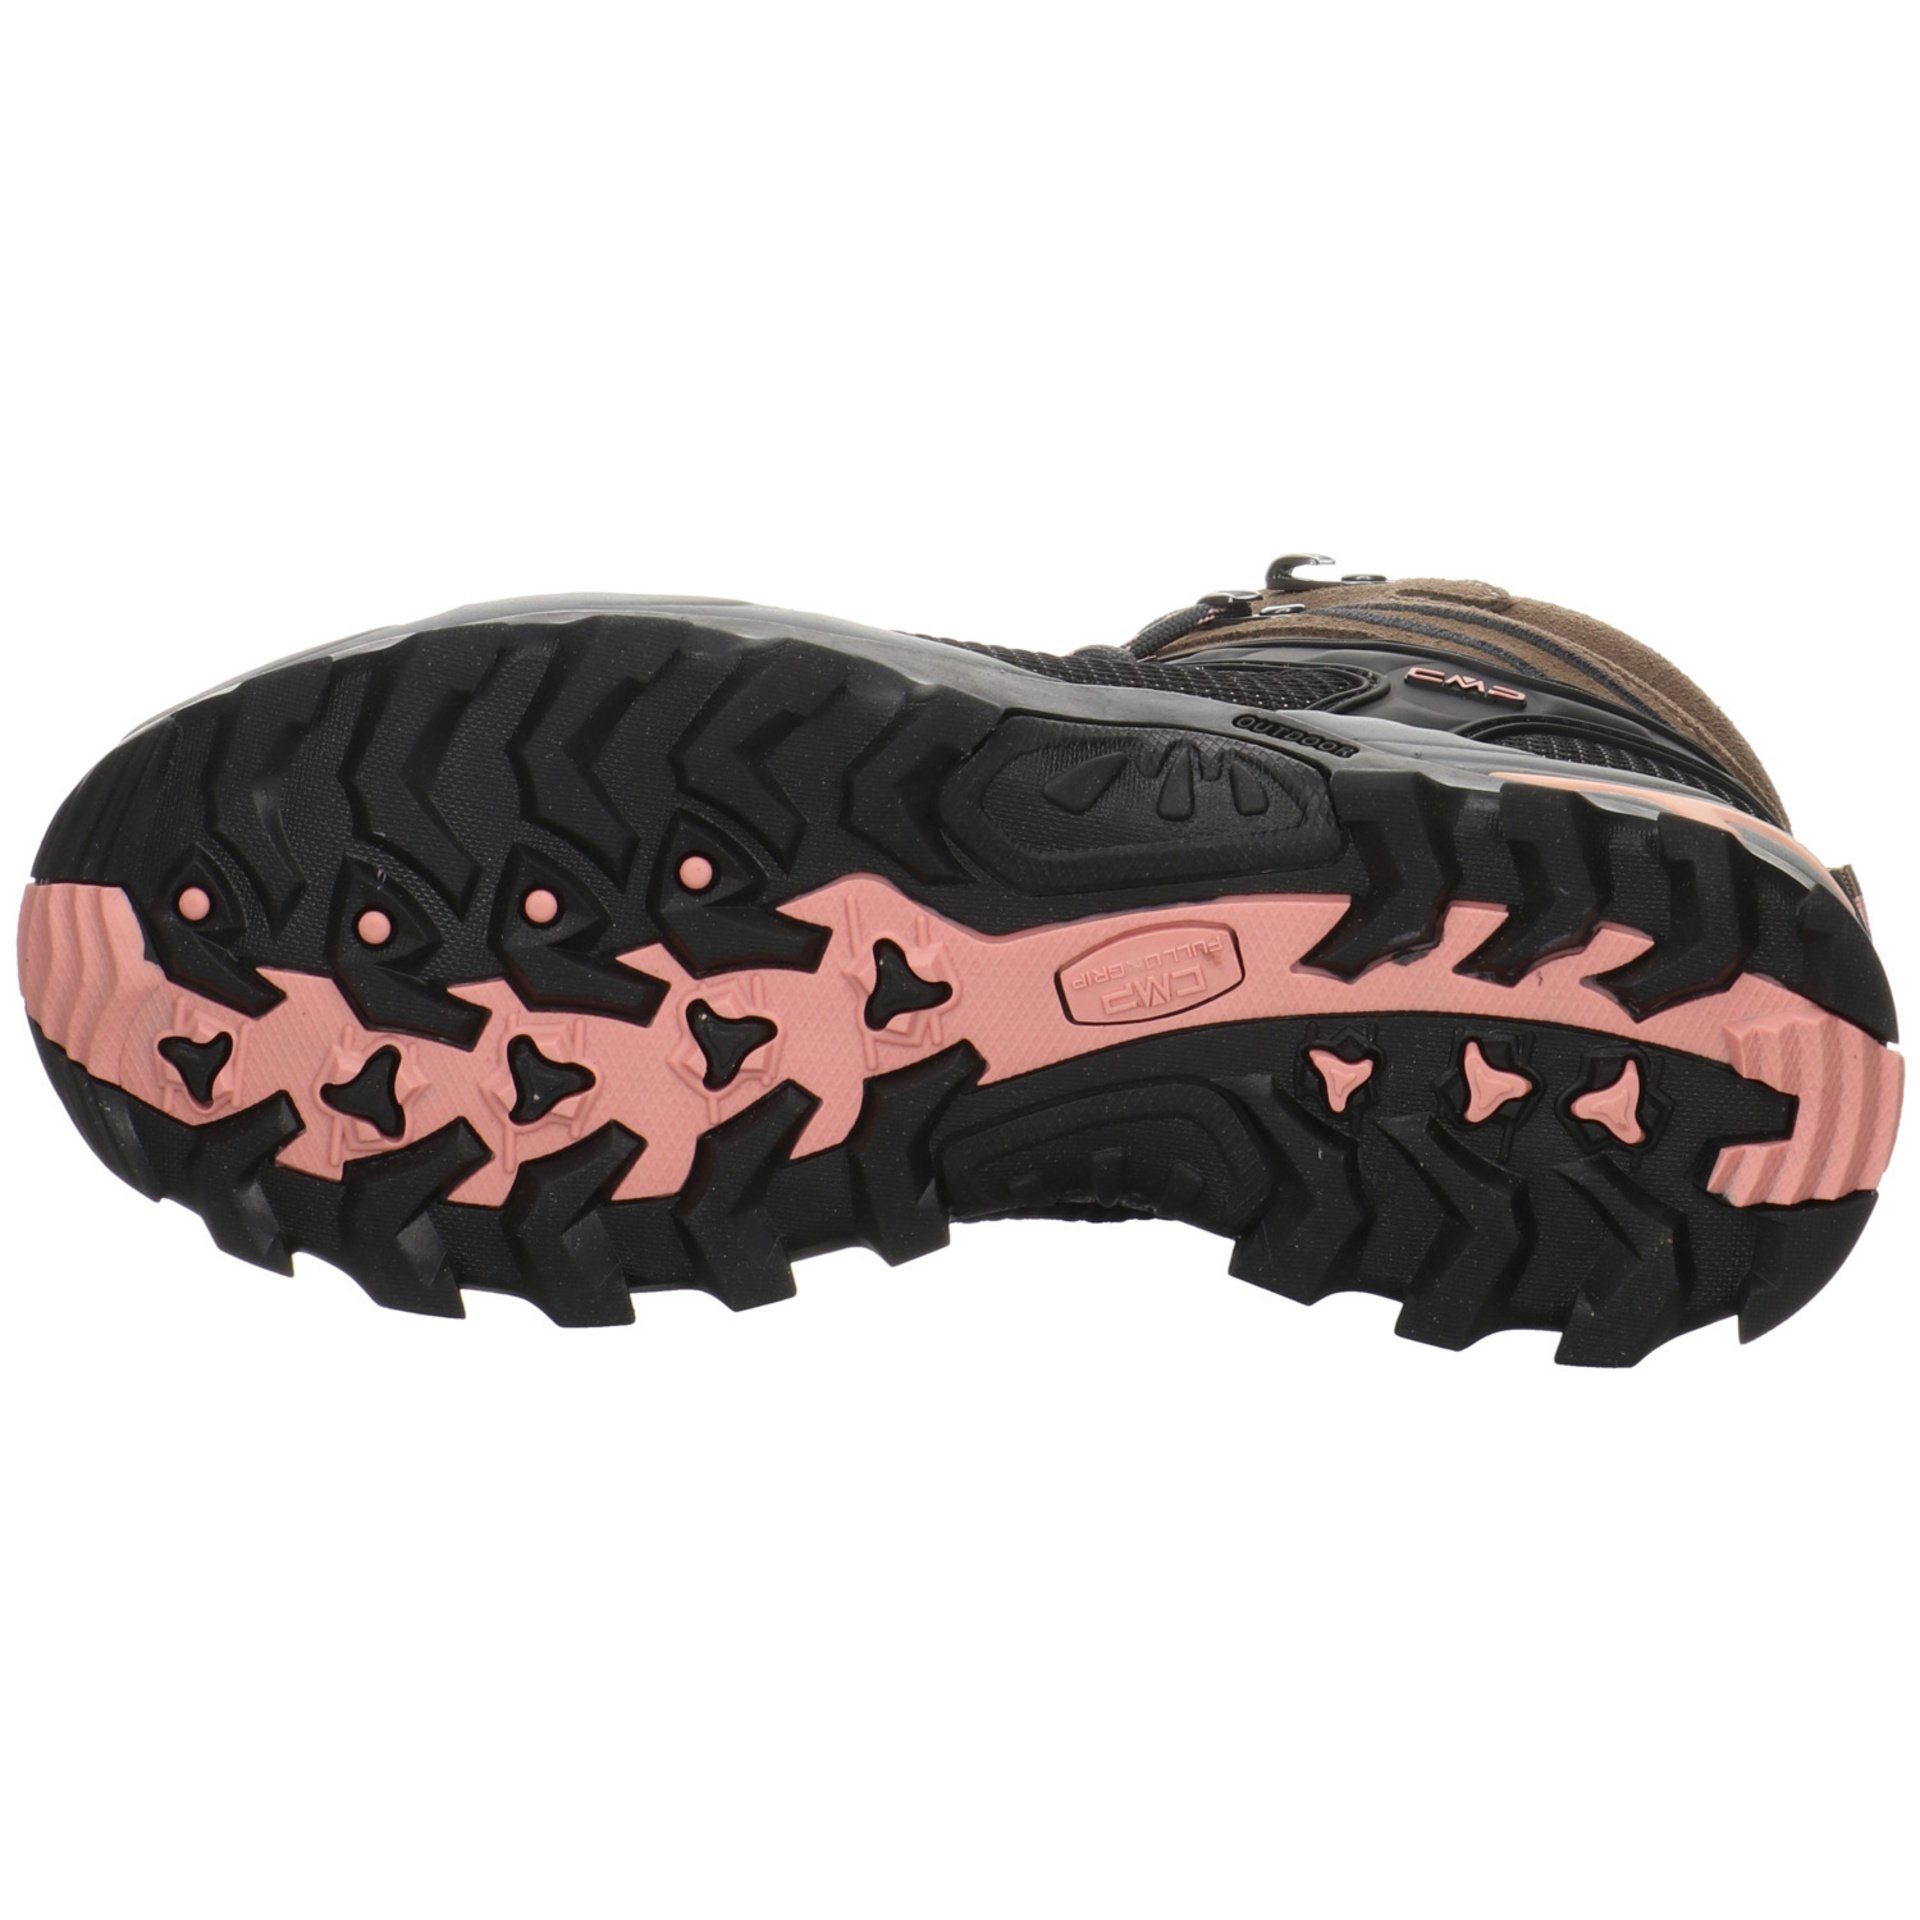 Outdoorschuh Rigel Leder-/Textilkombination Mid CMP Damen CENERE Outdoorschuh Outdoor Schuhe